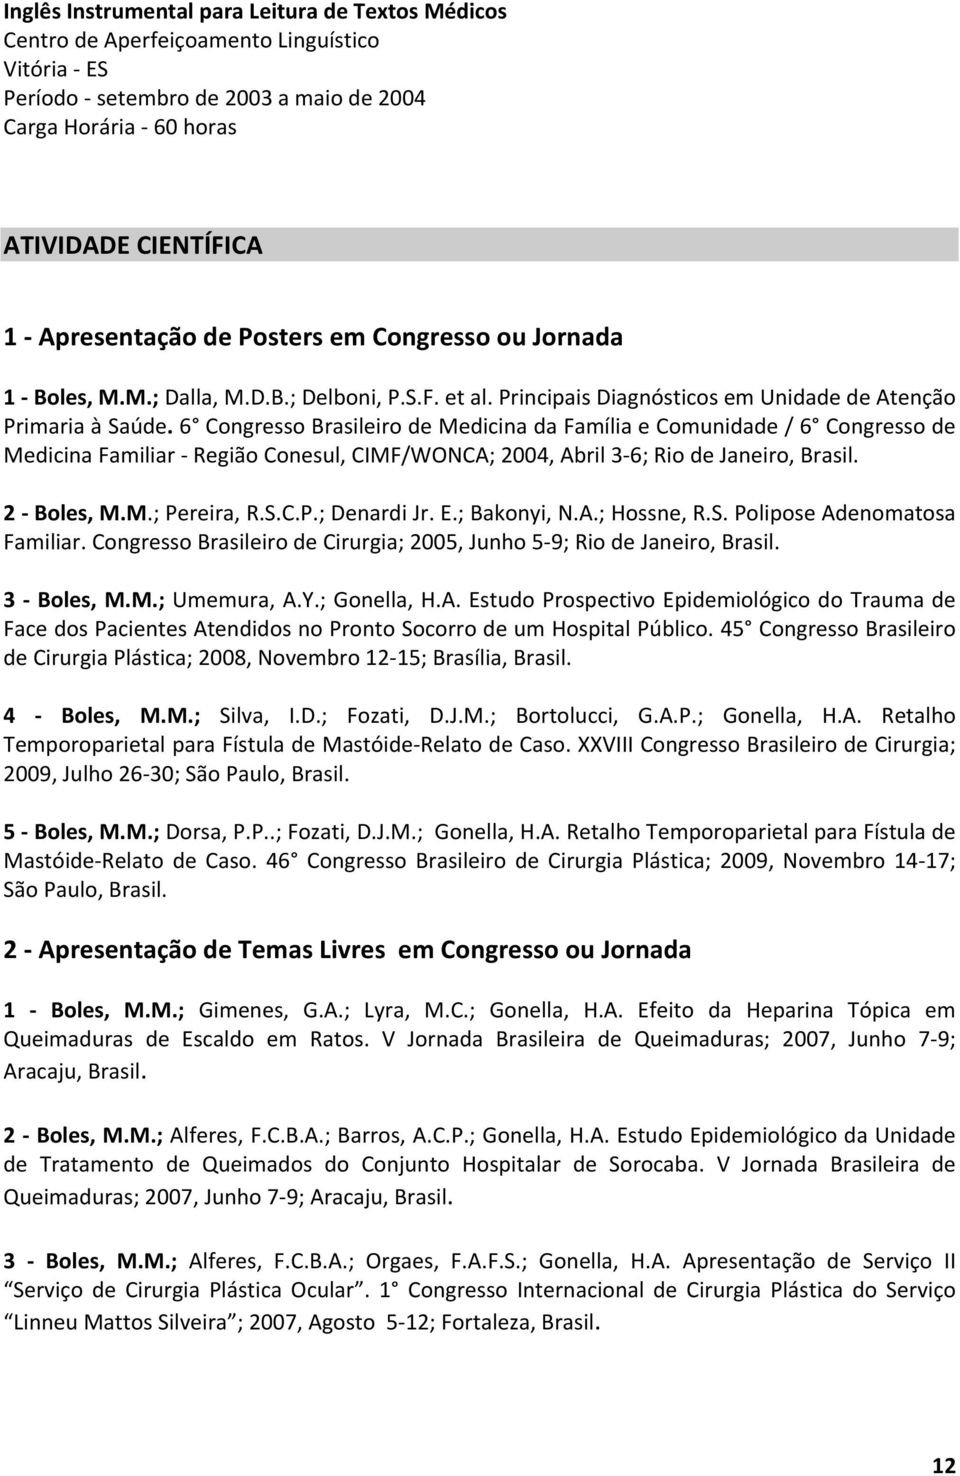 6 Congresso Brasileiro de Medicina da Família e Comunidade / 6 Congresso de Medicina Familiar - Região Conesul, CIMF/WONCA; 2004, Abril 3-6; Rio de Janeiro, Brasil. 2 - Boles, M.M.; Pereira, R.S.C.P.; Denardi Jr.